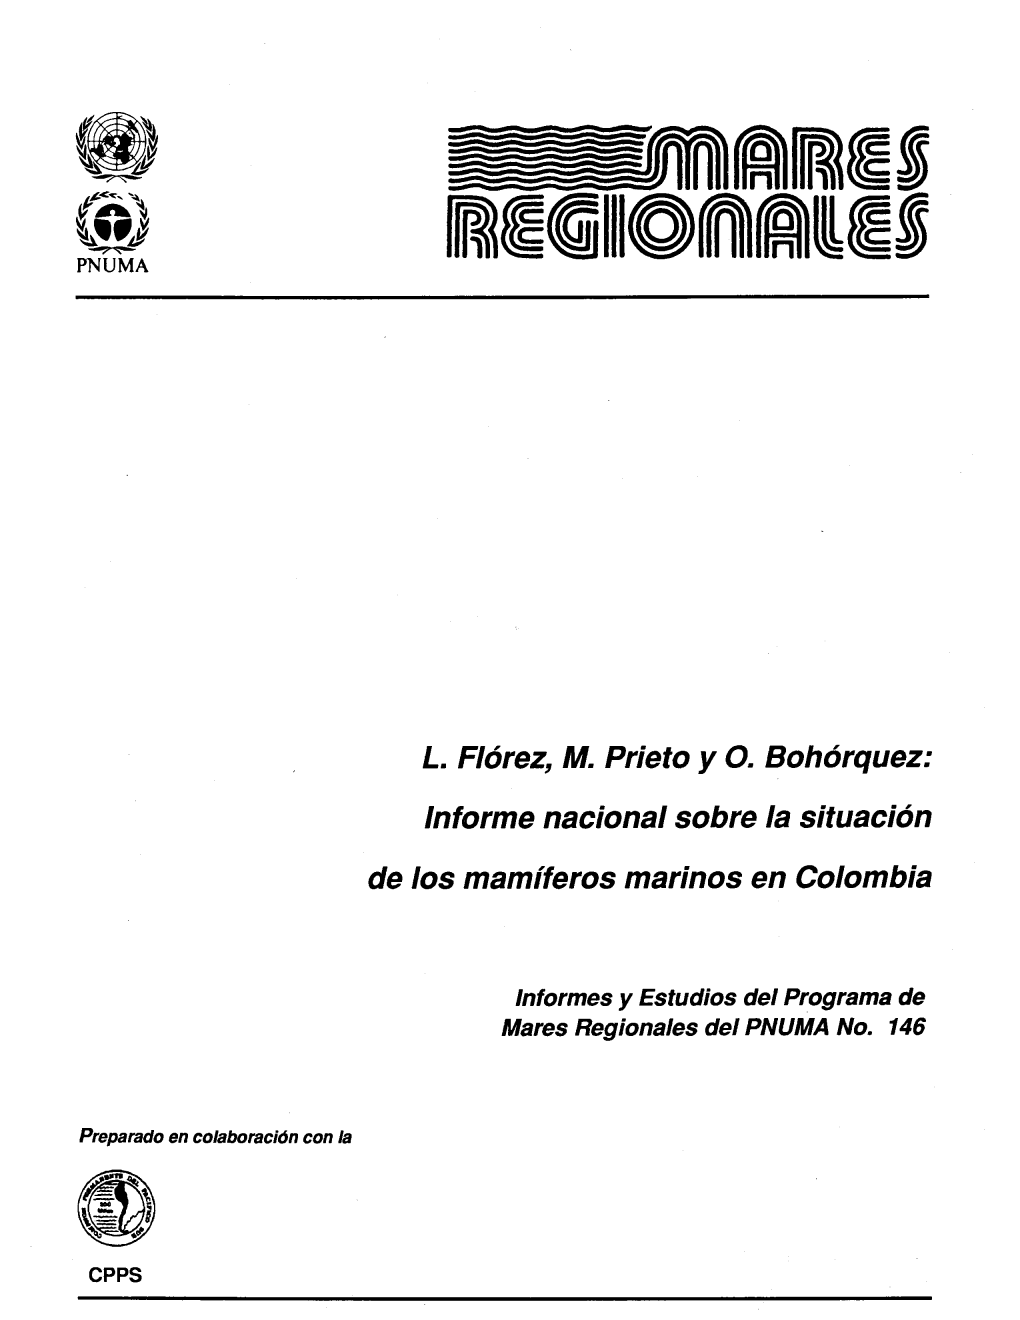 L. Florez, M. Prieto Y 0. Boh6rquez: Lnforme Nacional Sabre Ia Situaci6n De Los Mamiferos Marinas En Colombia